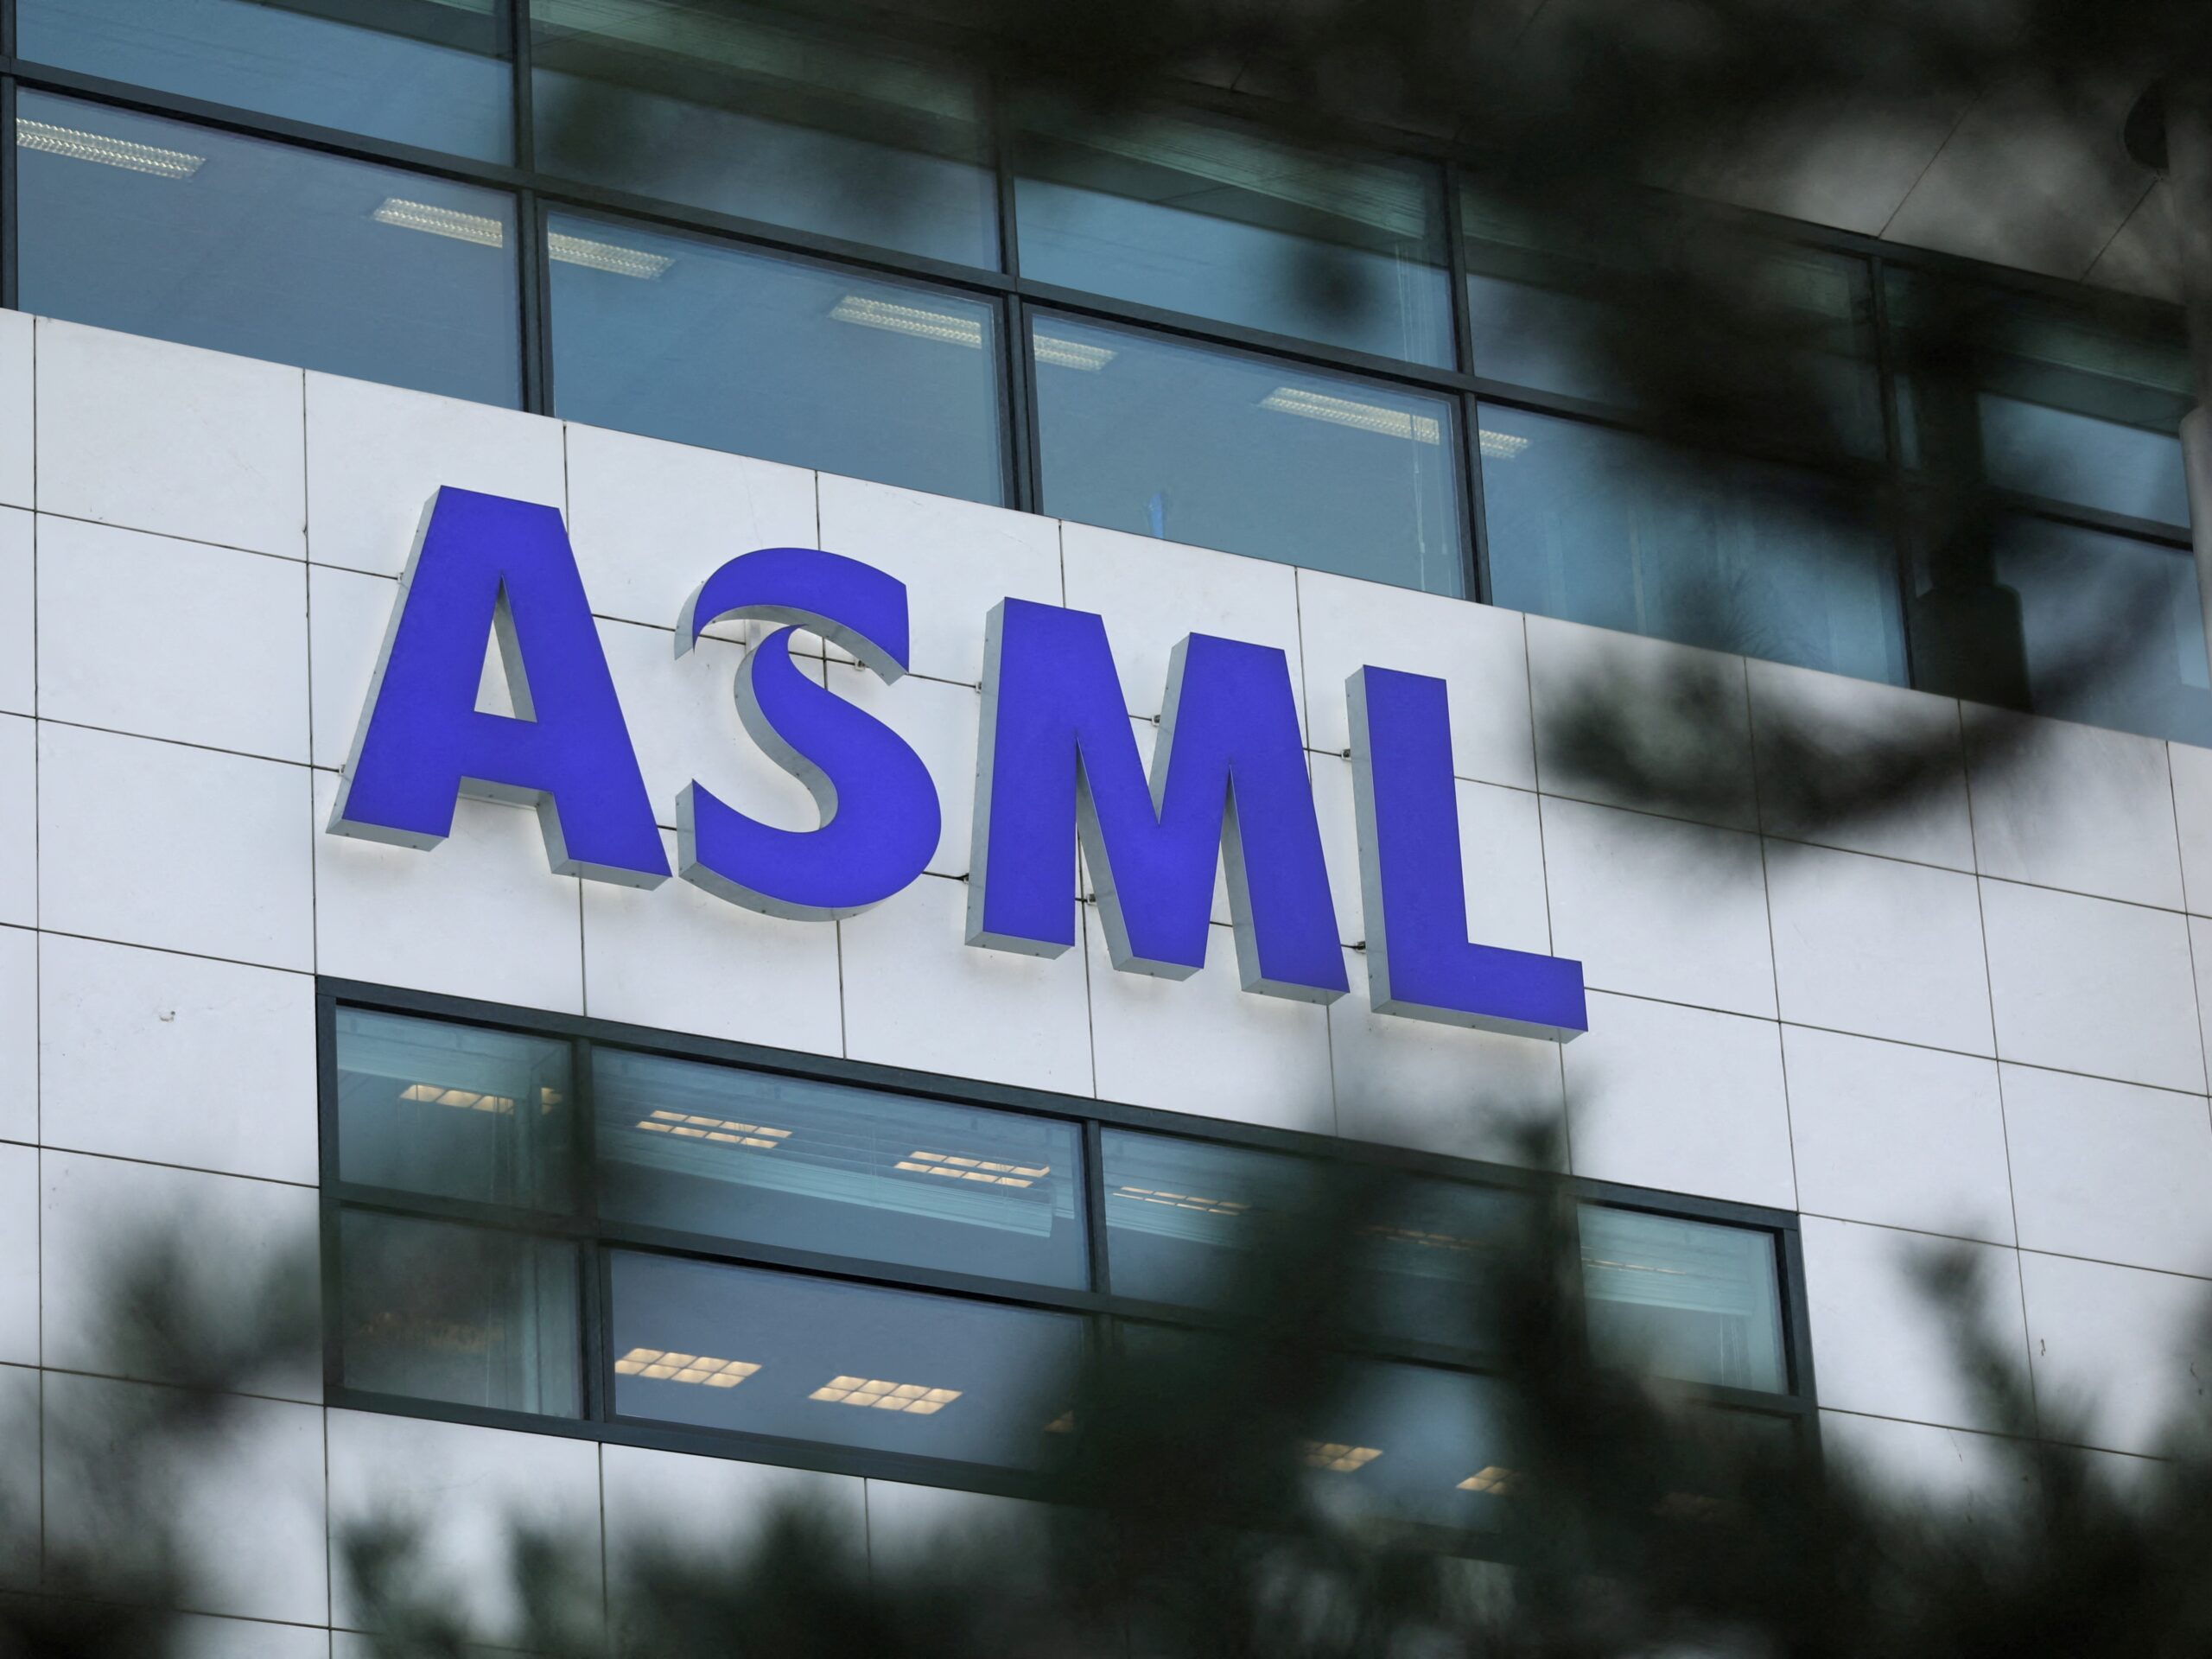 Holandská polovodičová spoločnosť ASML sa stala 3. najhodnotnejšou európskou firmou, podľa trhovej kapitalizácie, a vystriedala tak jednu z najväčších potravinárskych spoločností na svete Nestlé. Stalo sa tak po tom, čo jej akcie dnes vzrástli na dvojročné maximum.